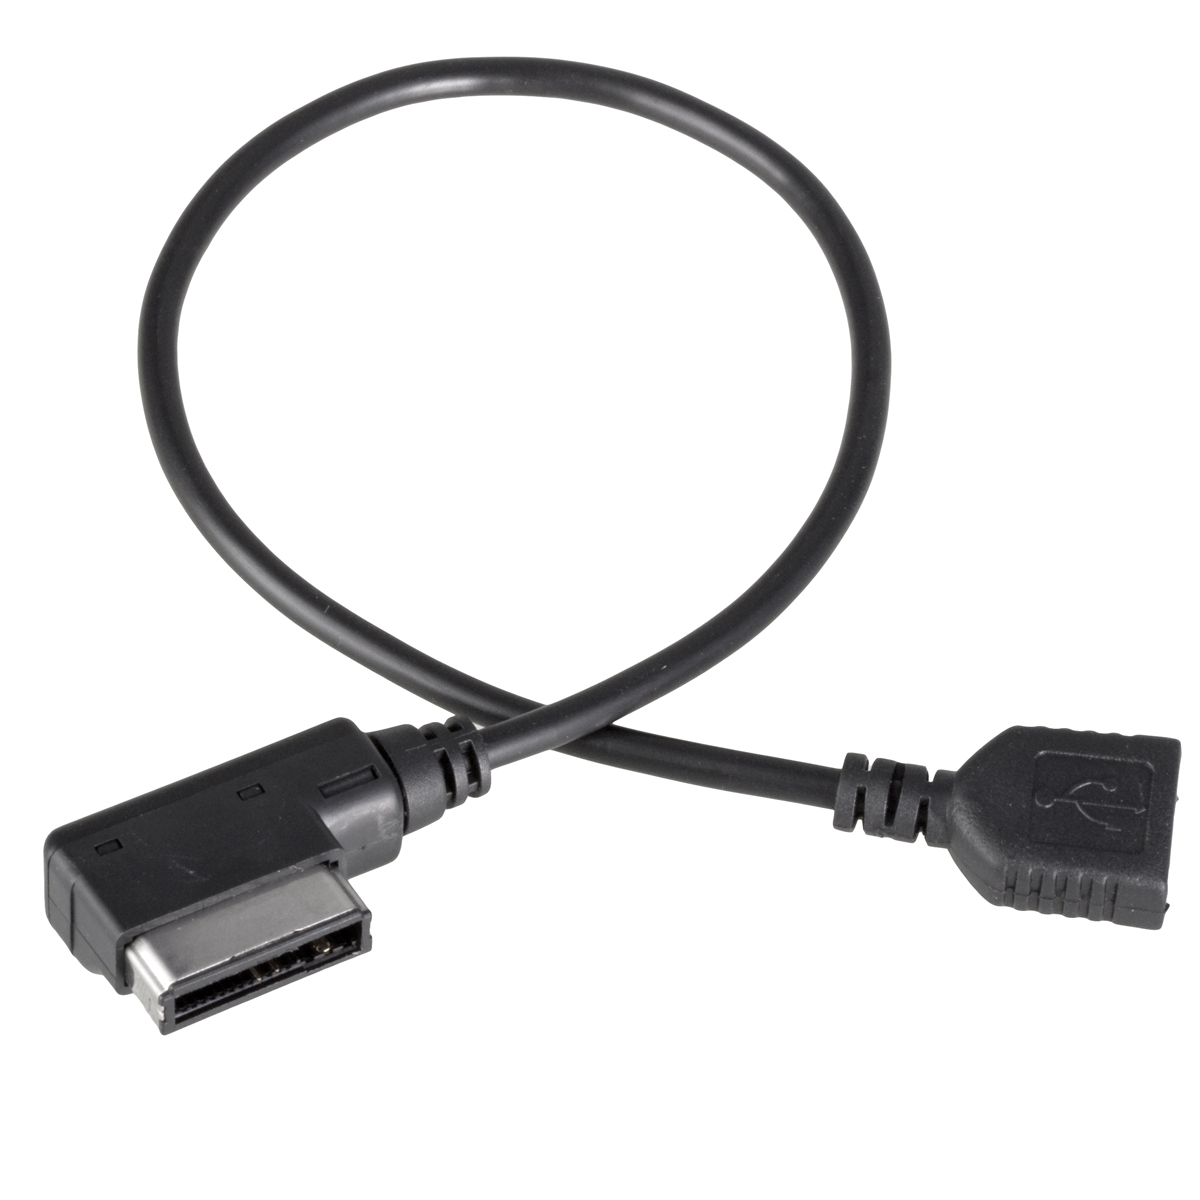  Interfac  MDI MMI  USB Flash      Audi A3 A4 A5 A6 A8 Q5 Q8 Q7 A4L A6L MA015